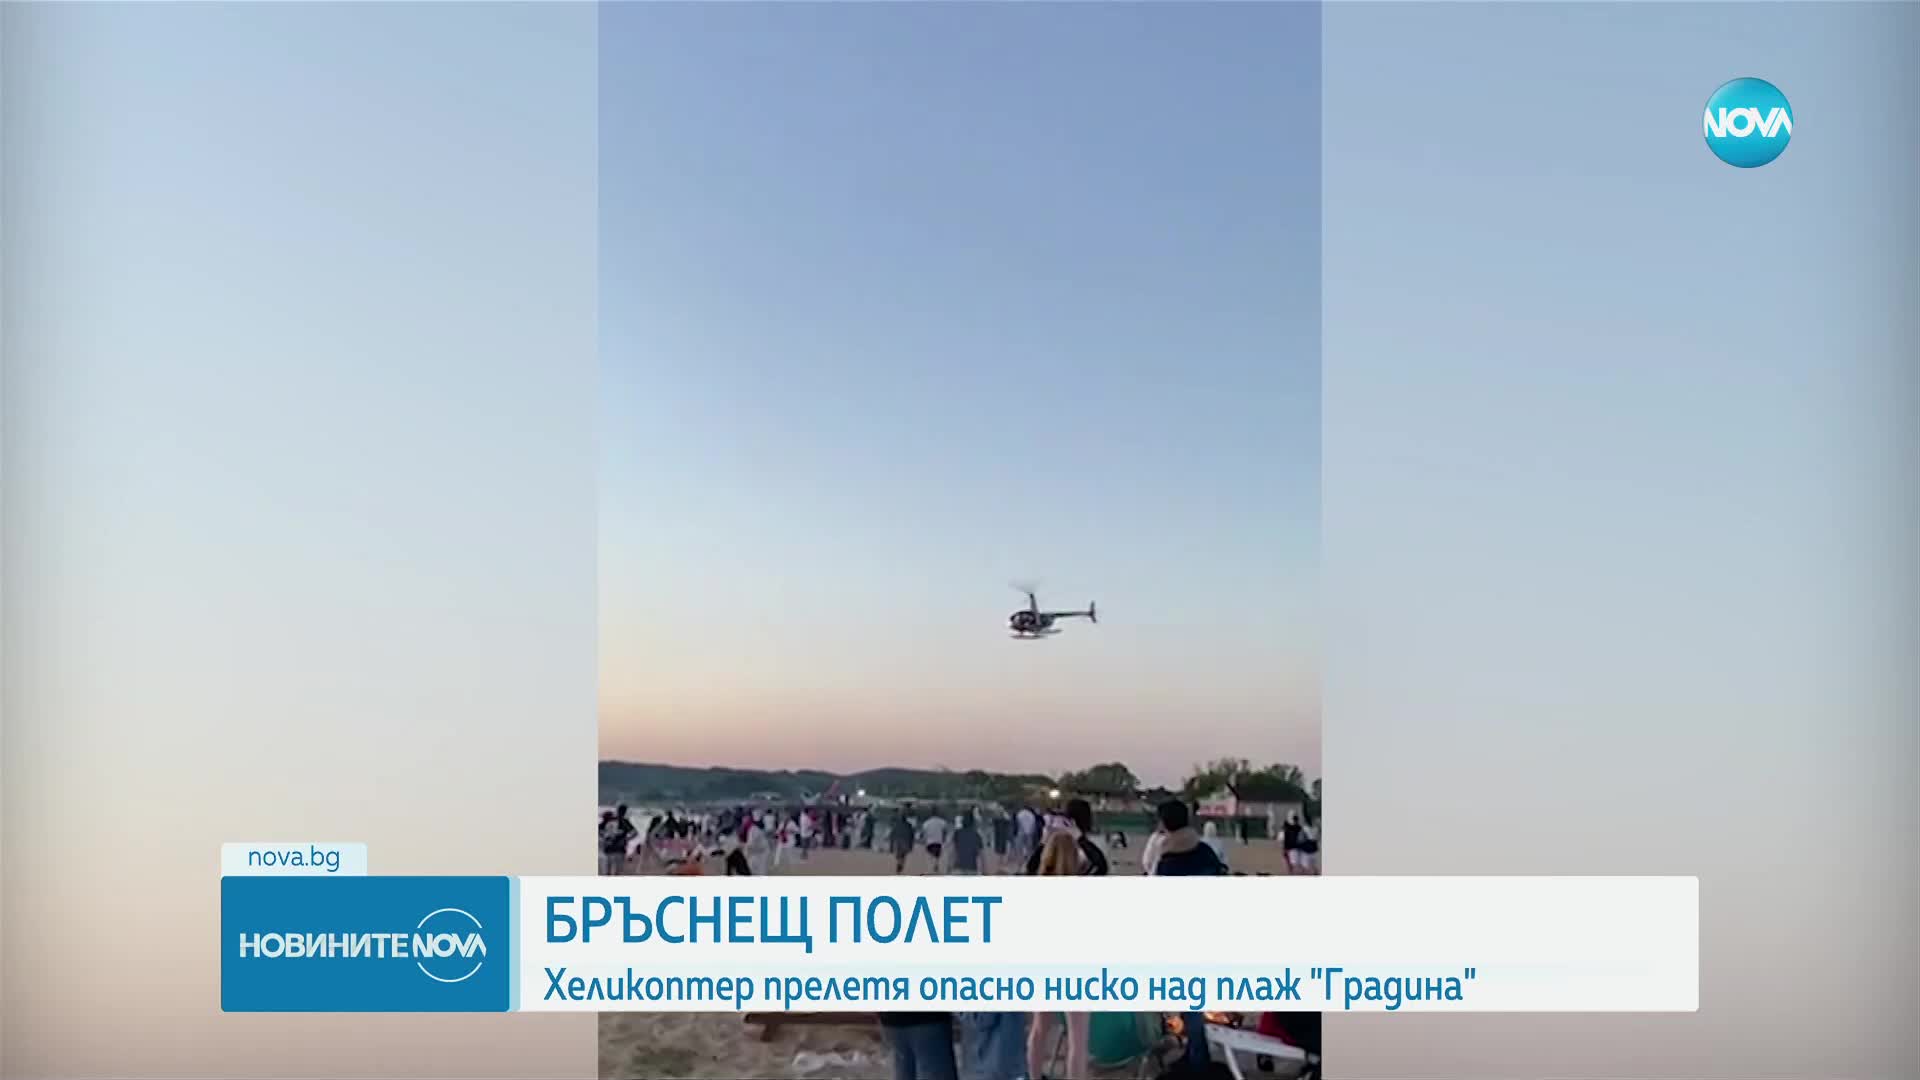 Хеликоптерът от плаж „Градина” хвърлял хартии с образа на бивш управляващ